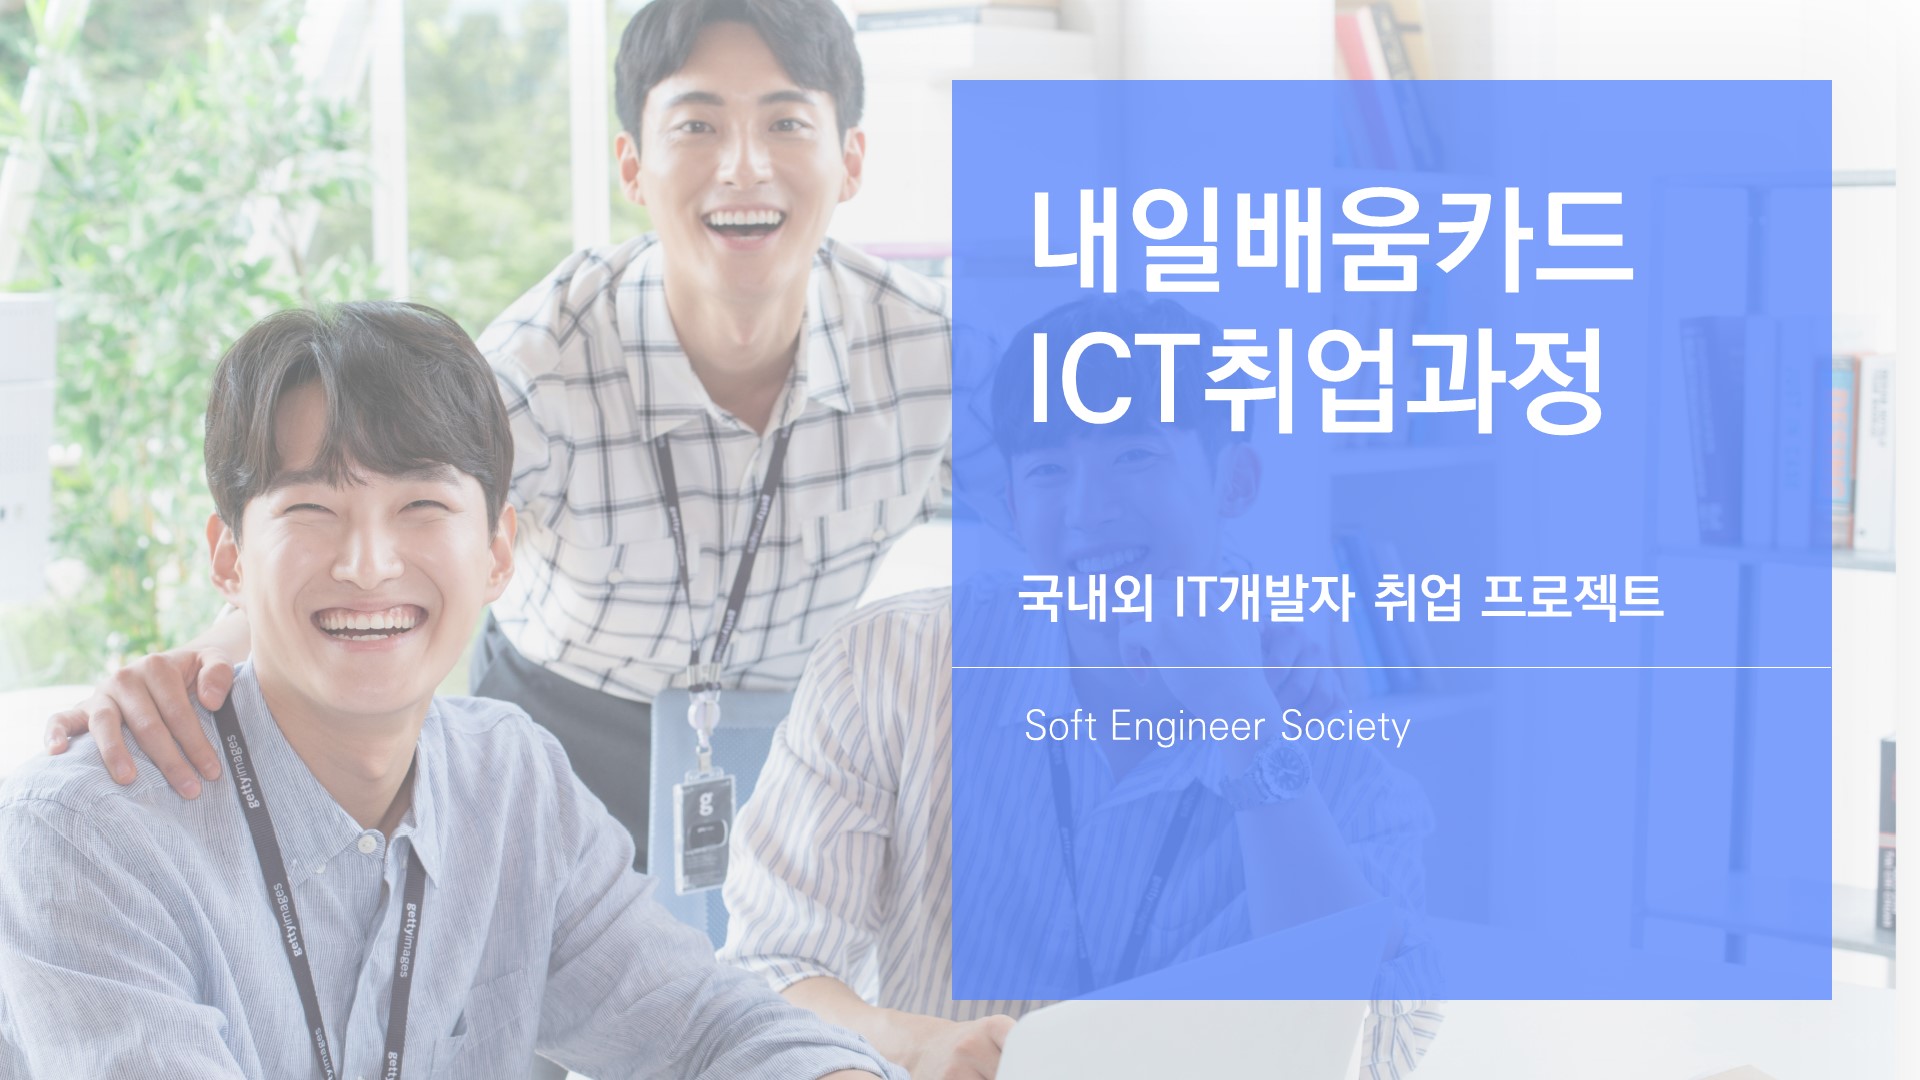 내일배움카드 ICT취업과정 / 국내외 IT개발자 취업프로젝트 / Soft Engineer Society